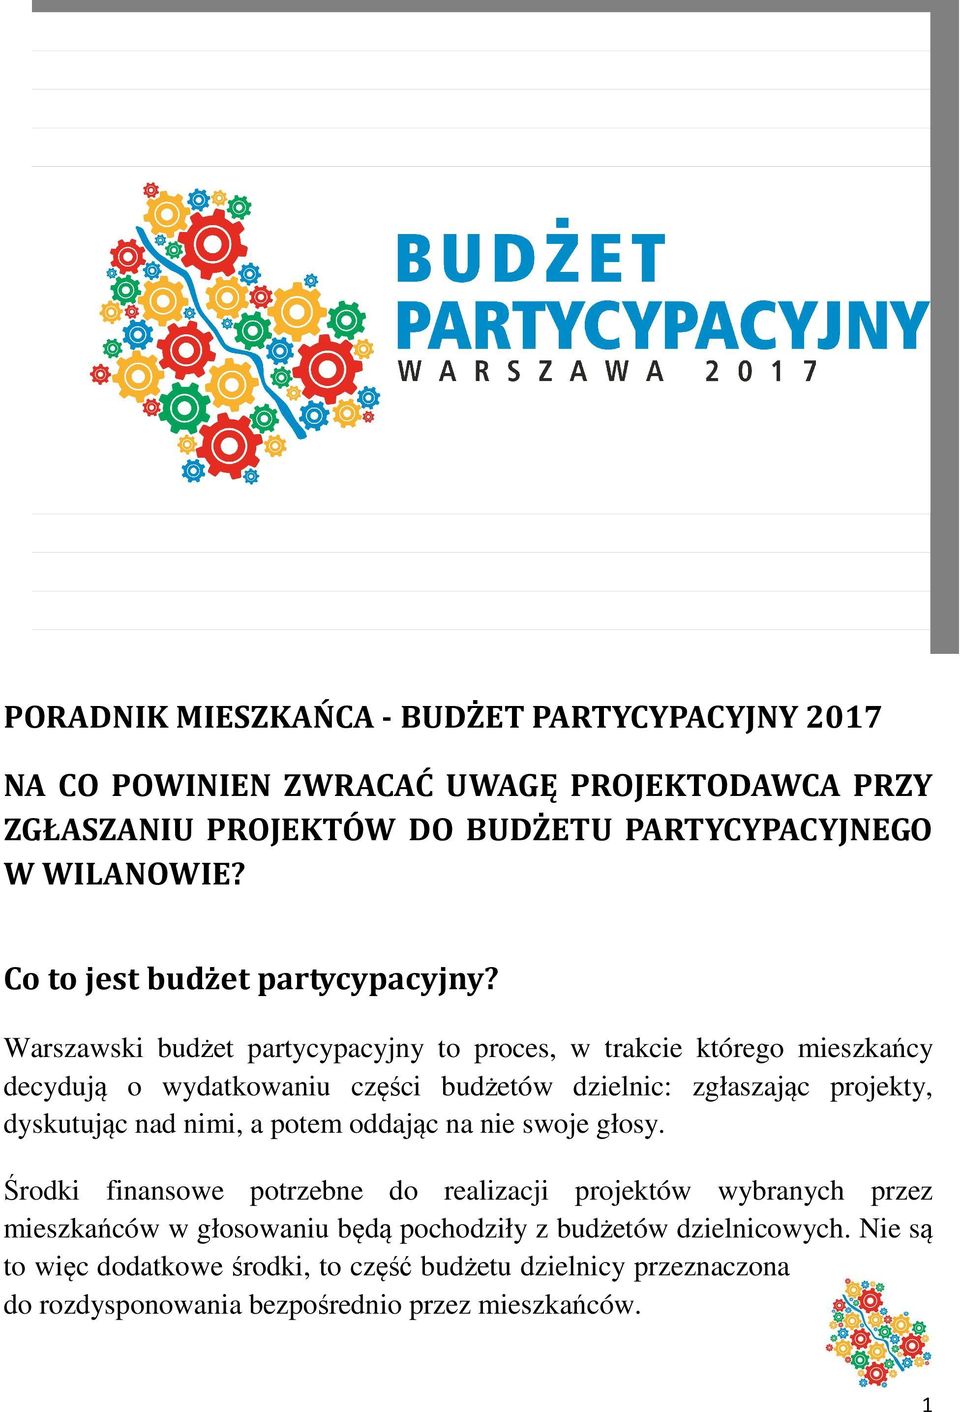 Warszawski budżet partycypacyjny to proces, w trakcie którego mieszkańcy decydują o wydatkowaniu części budżetów dzielnic: zgłaszając projekty, dyskutując nad